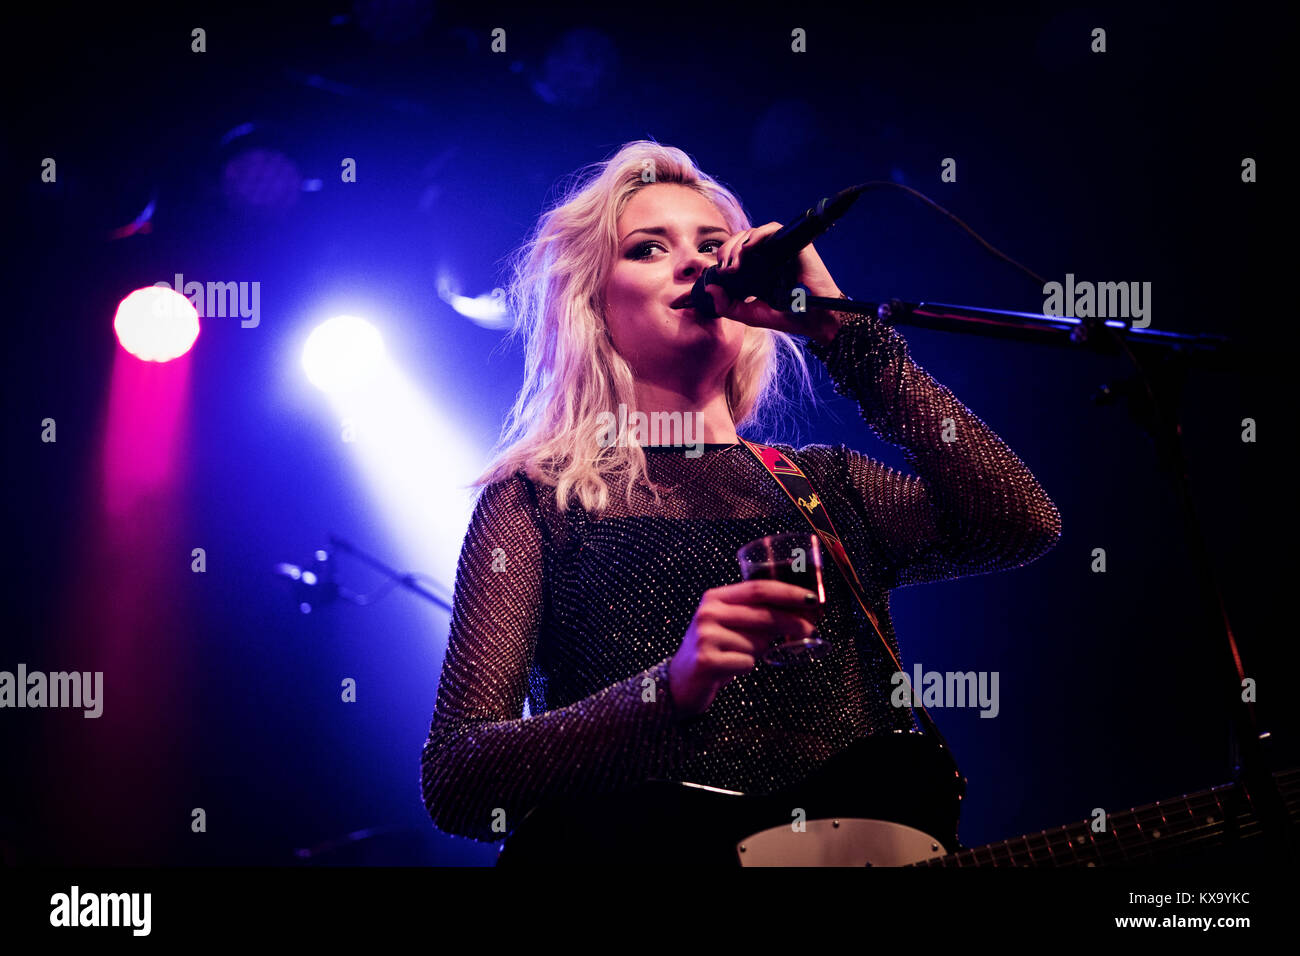 Le chanteur-compositeur écossais et musicien Nina Nesbitt effectue un concert live au Danish Music Festival Festival 2014 Skanderborg / Smukfest. Le Danemark, 08/08 2014. Banque D'Images